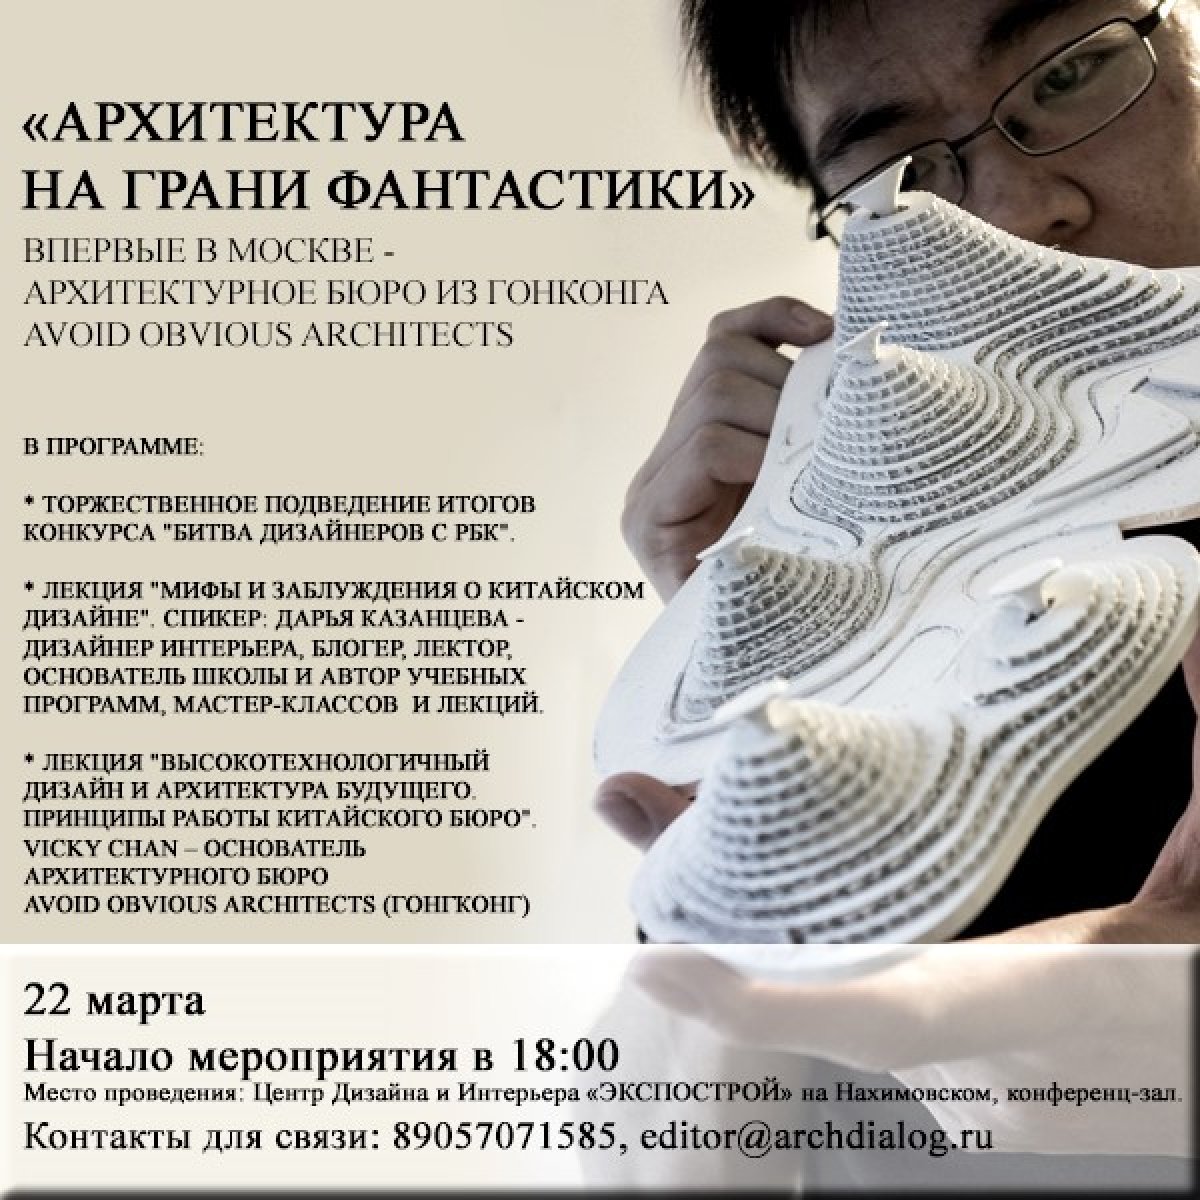 22 марта приглашаем на лекцию "Высокотехнологичный дизайн и архитектура будущего", в Центр дизайна и Интерьера "ЭКСПОСТРОЙ" на Нахимовском!